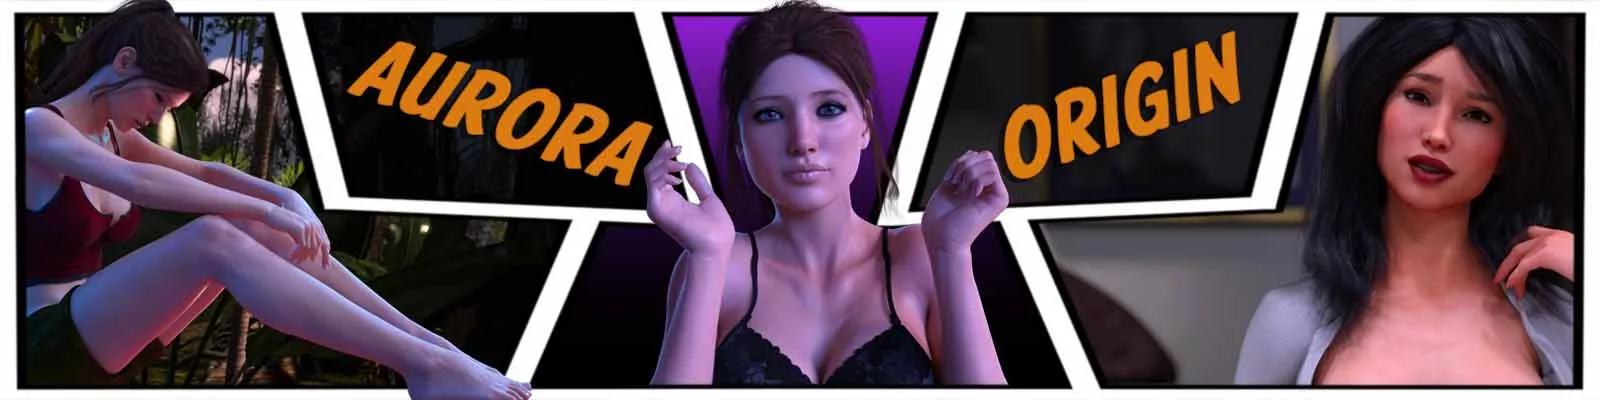 Aurora Origin 3d juego sexual, juego xxx, juego porno